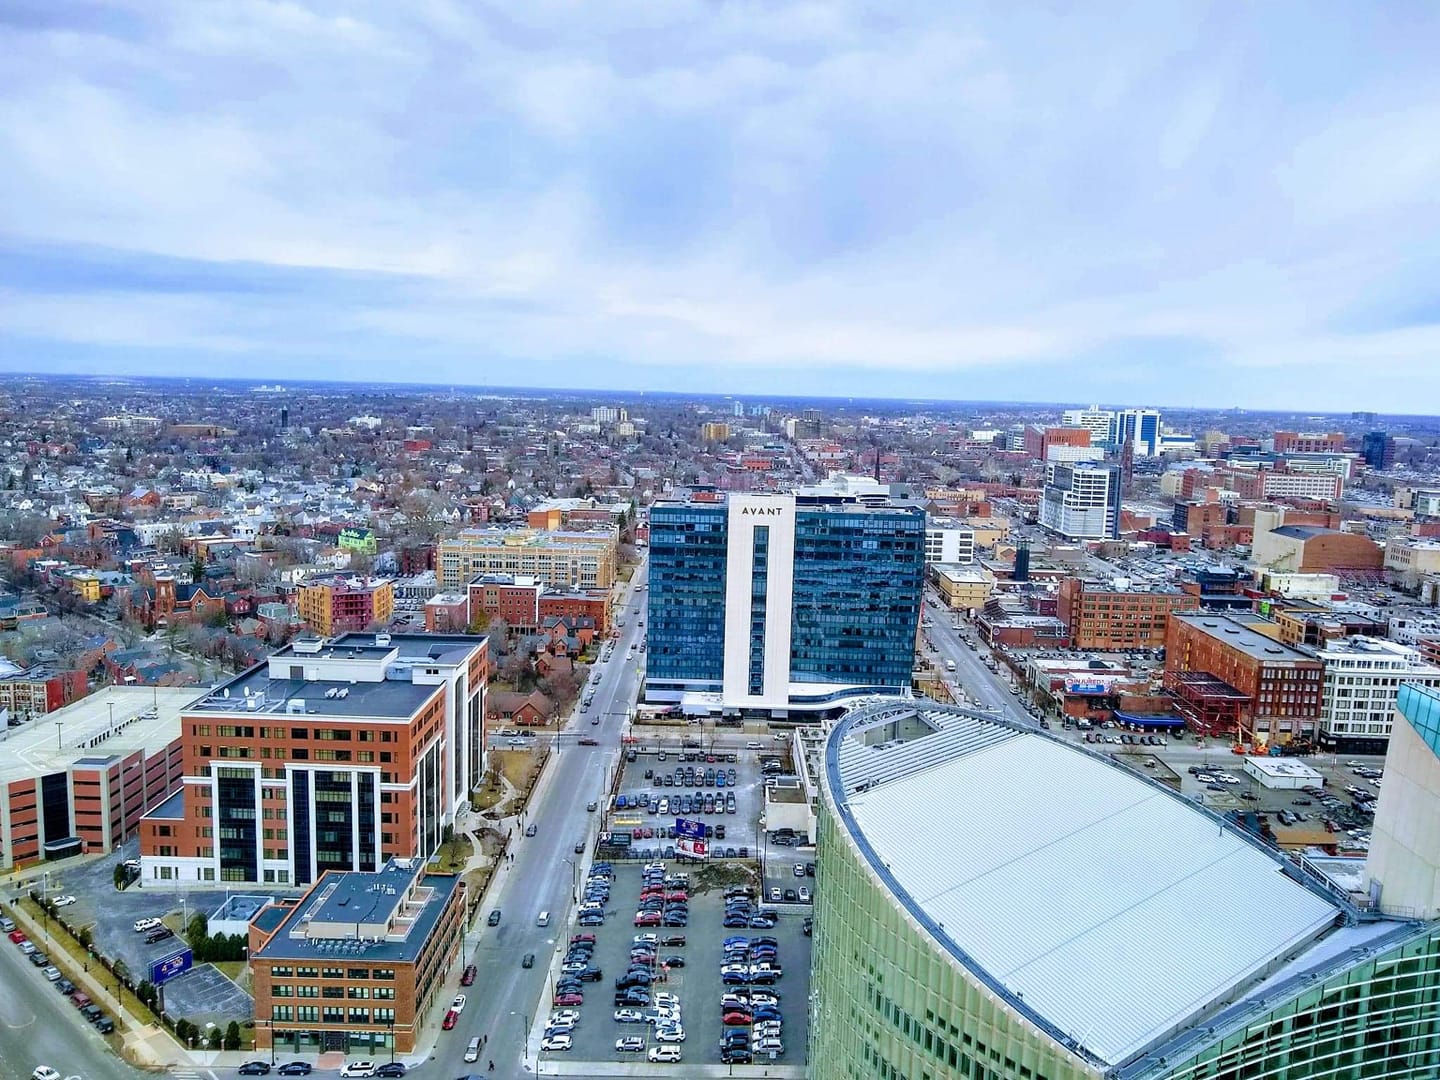 Buffalo City Hall Observation Deck | Buffalo, NY